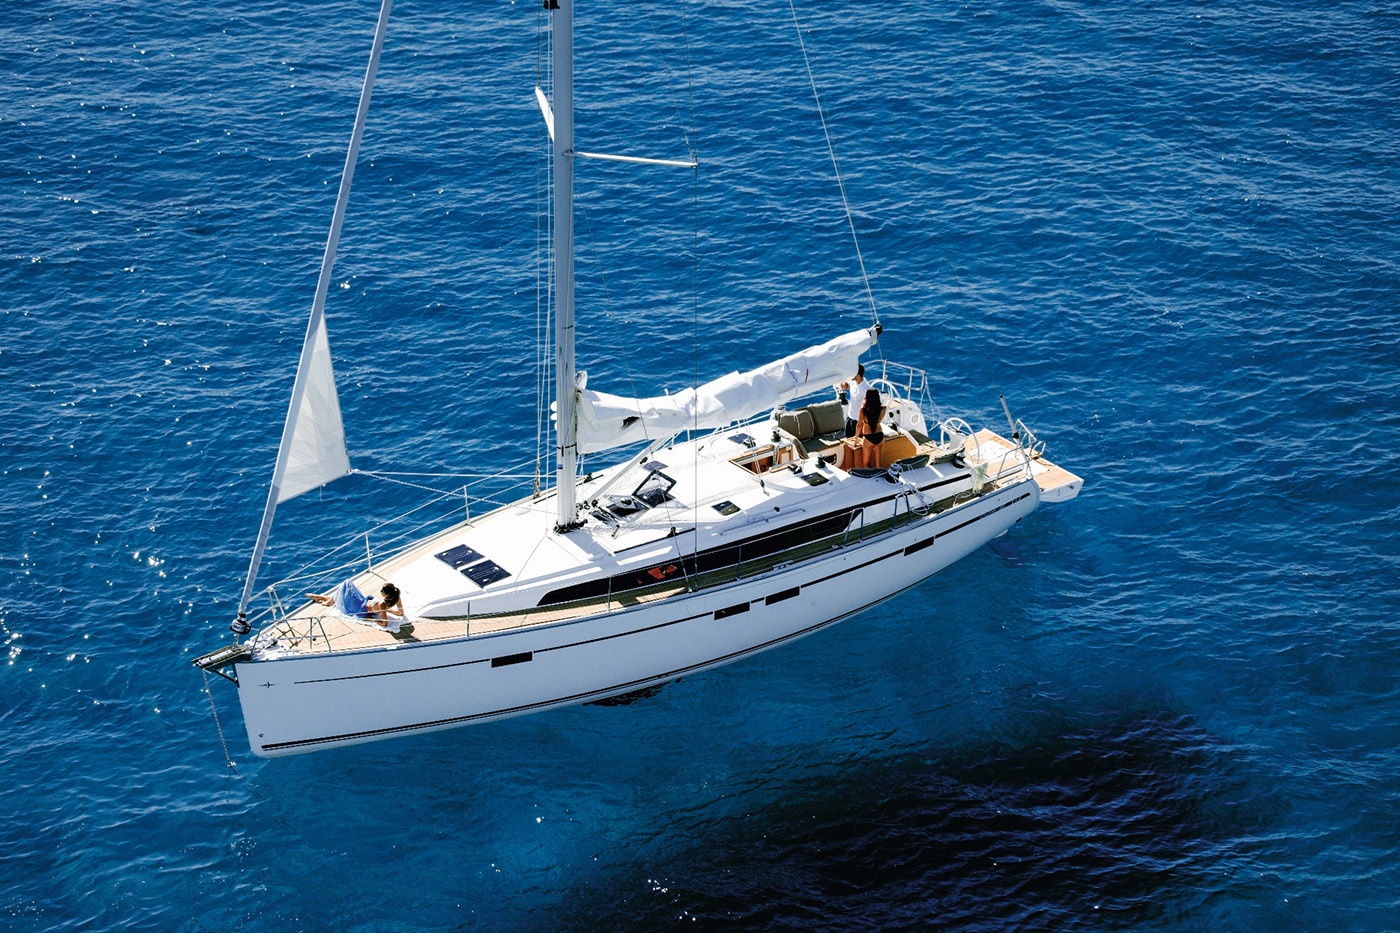 Bavaria CR46 sailboat